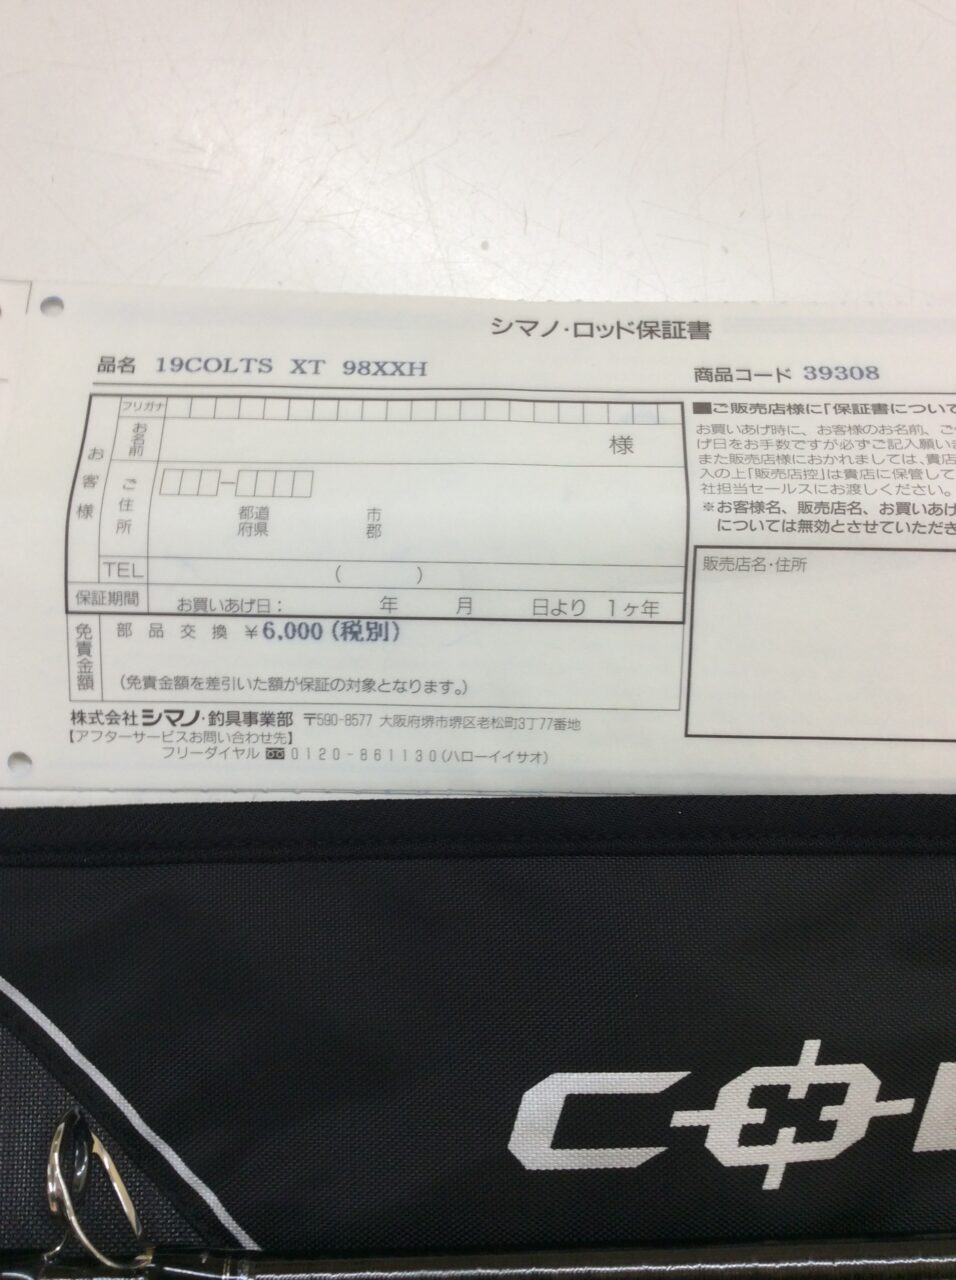 シマノ コルトスナイパー エクスチューン S98XXH | J-shop